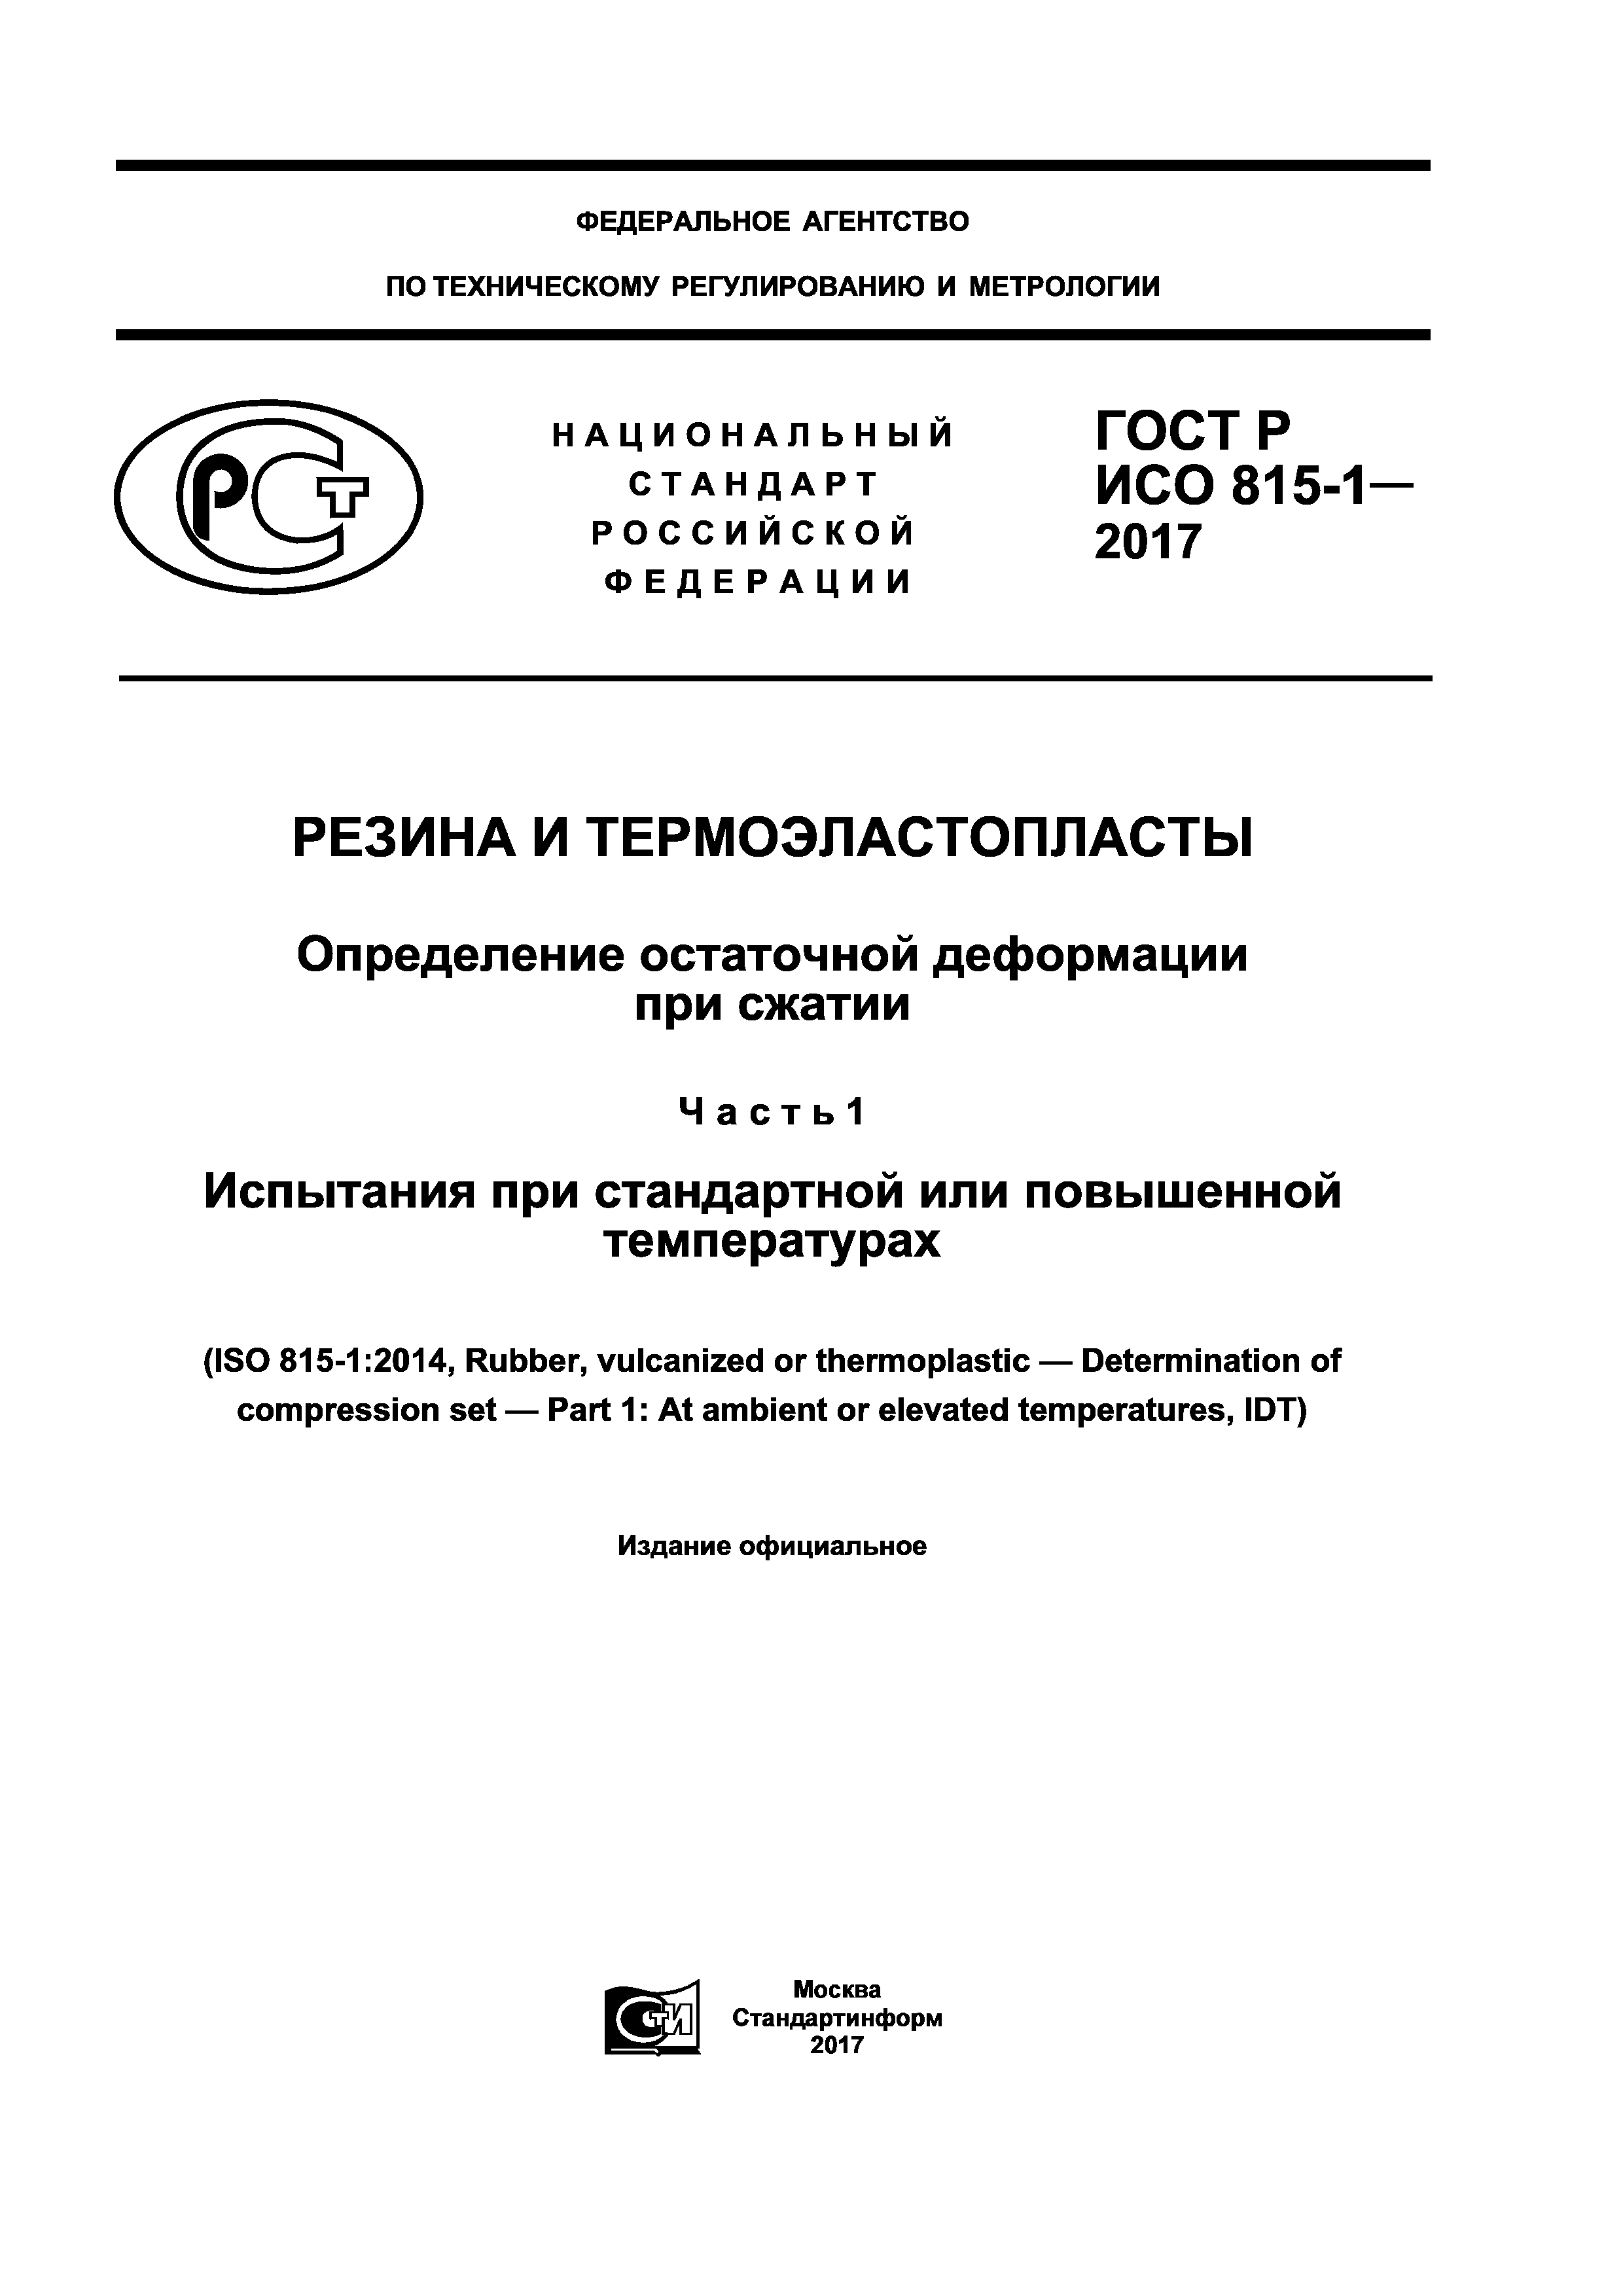 ГОСТ Р ИСО 815-1-2017